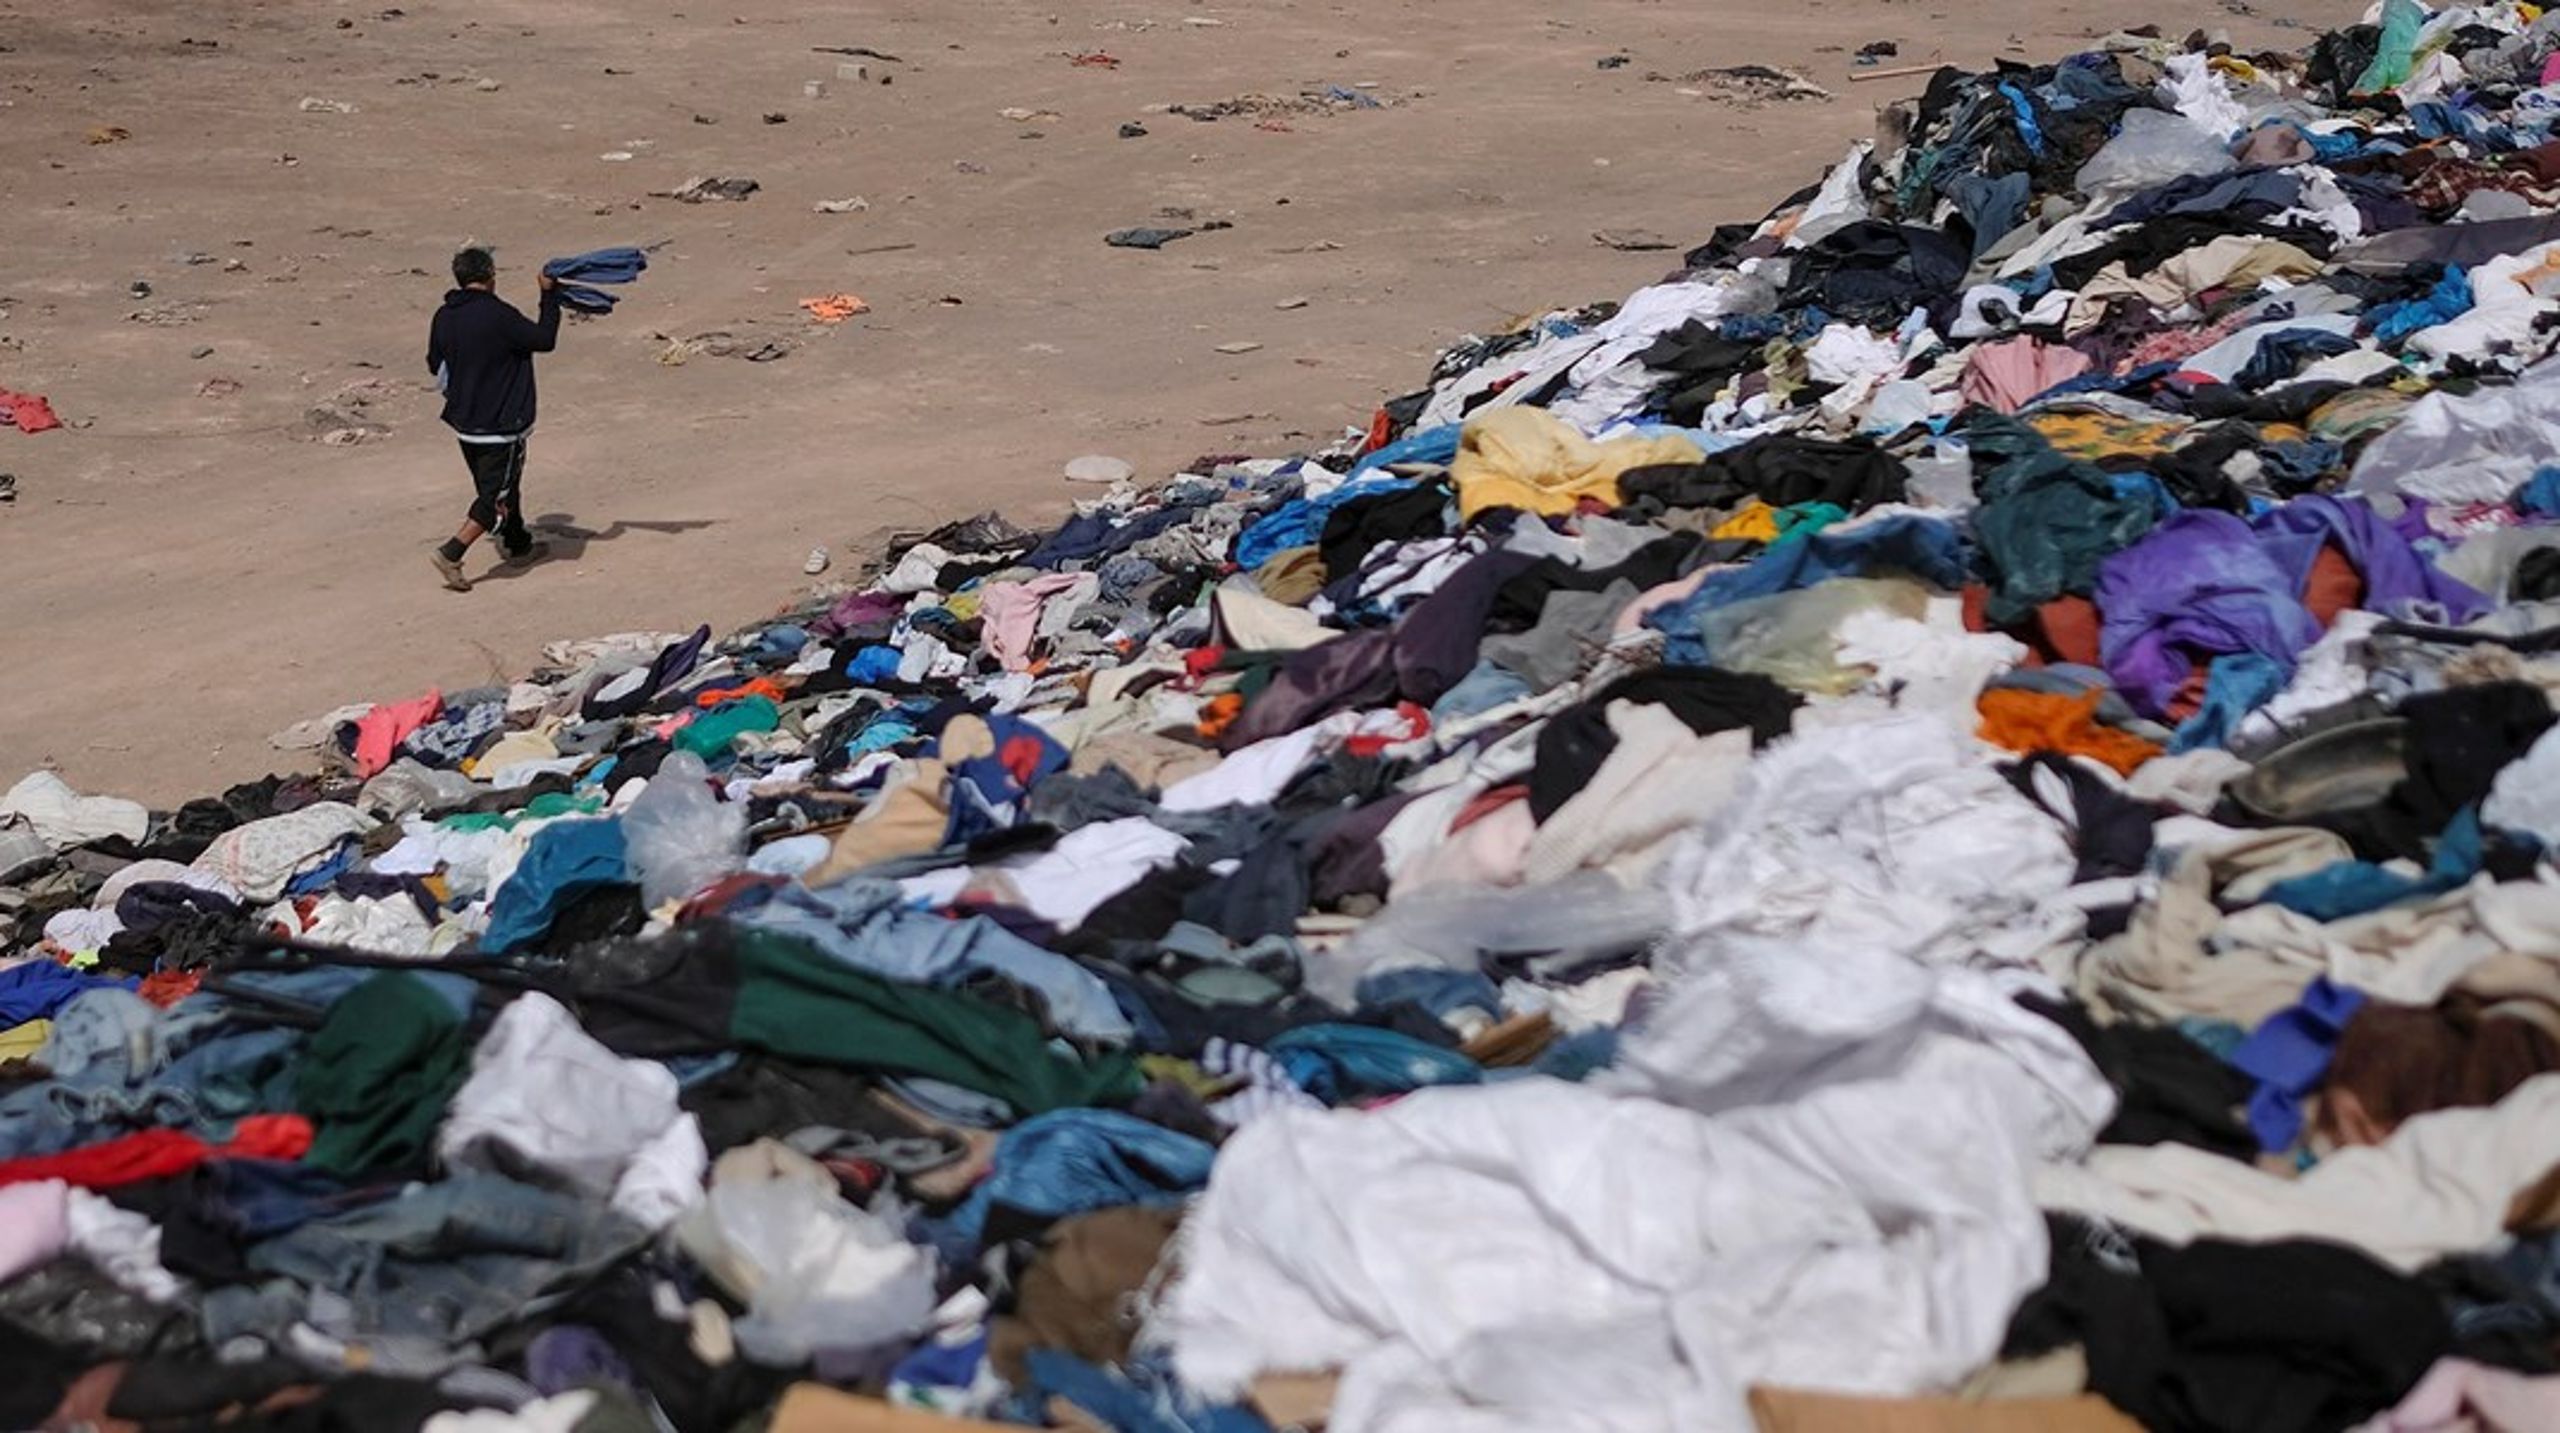 Alt for meget tøj ender i store affaldsbjerge i lande med dårlige forudsætninger for at håndtere affaldet miljømæssigt forsvarligt, skriver Anne Paulin, Lea Wermelin og Ida Auken.